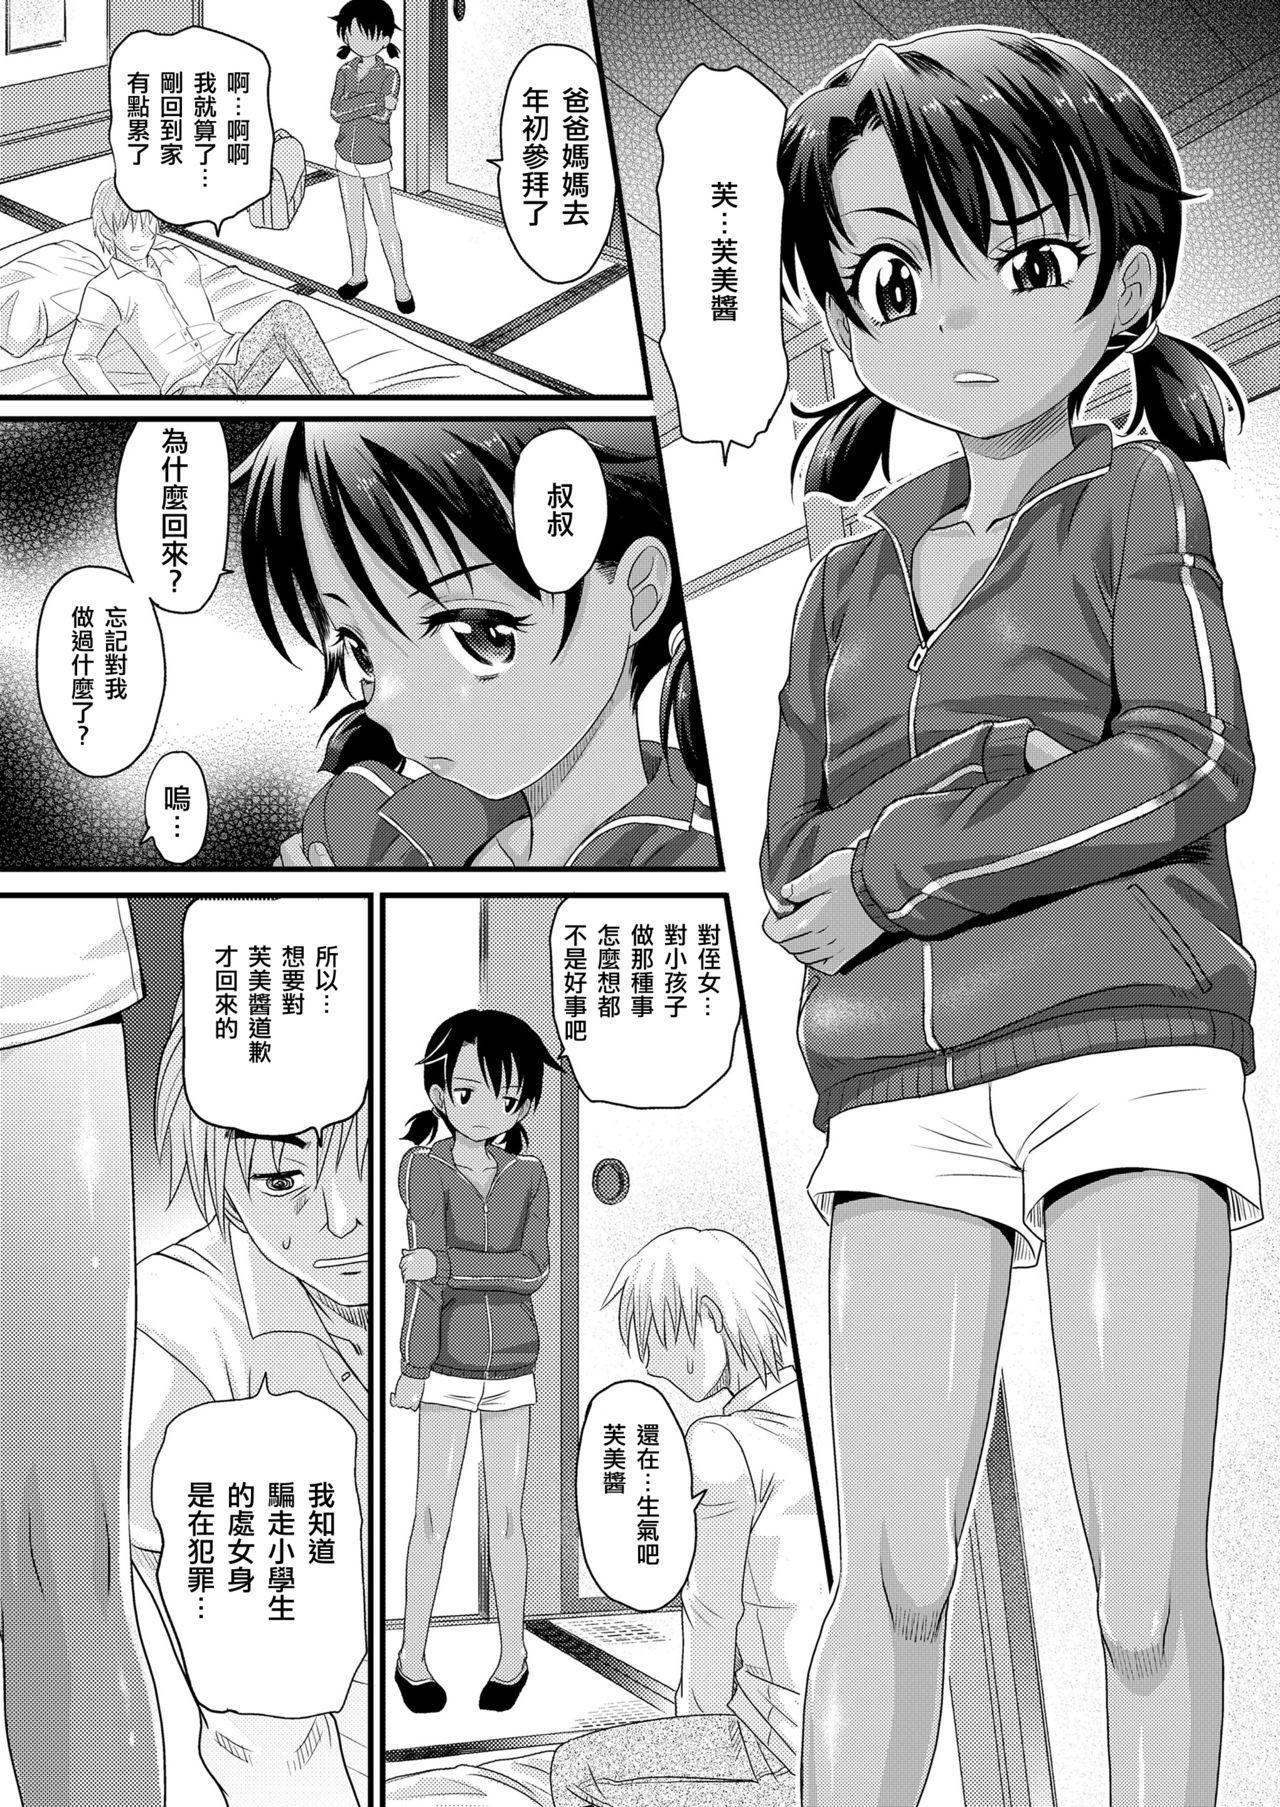 Stripping Gomennasai Toiu Made wa | 甚至不需要說抱歉 Art - Page 4